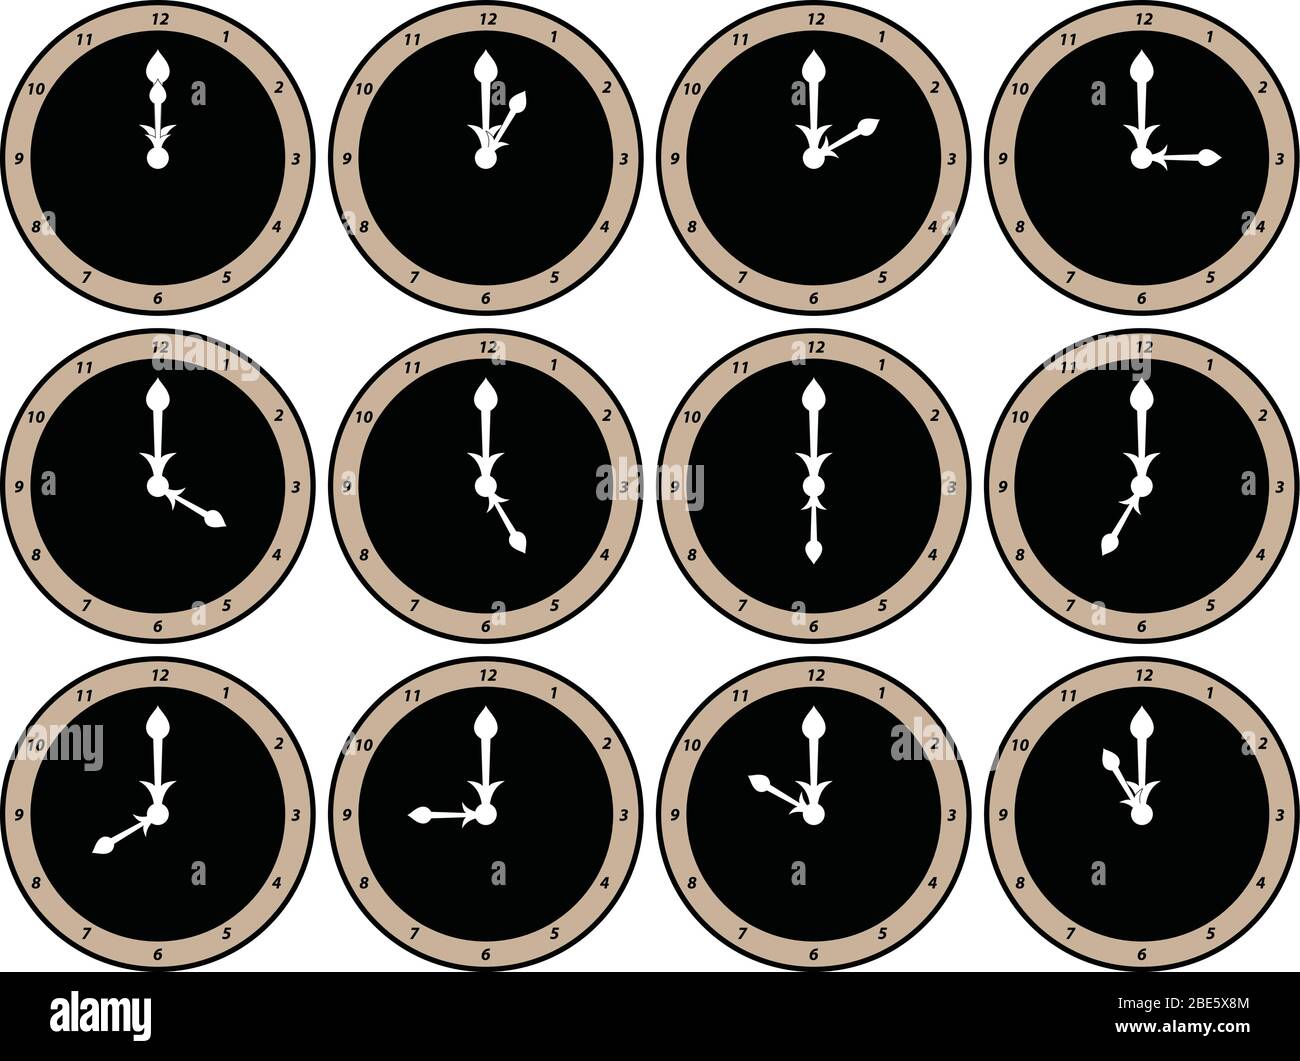 Douze faces d'horloge analogiques avec des aiguilles d'heure et de minute blanches indiquant l'heure de 12 heures à 11 heures Illustration de Vecteur